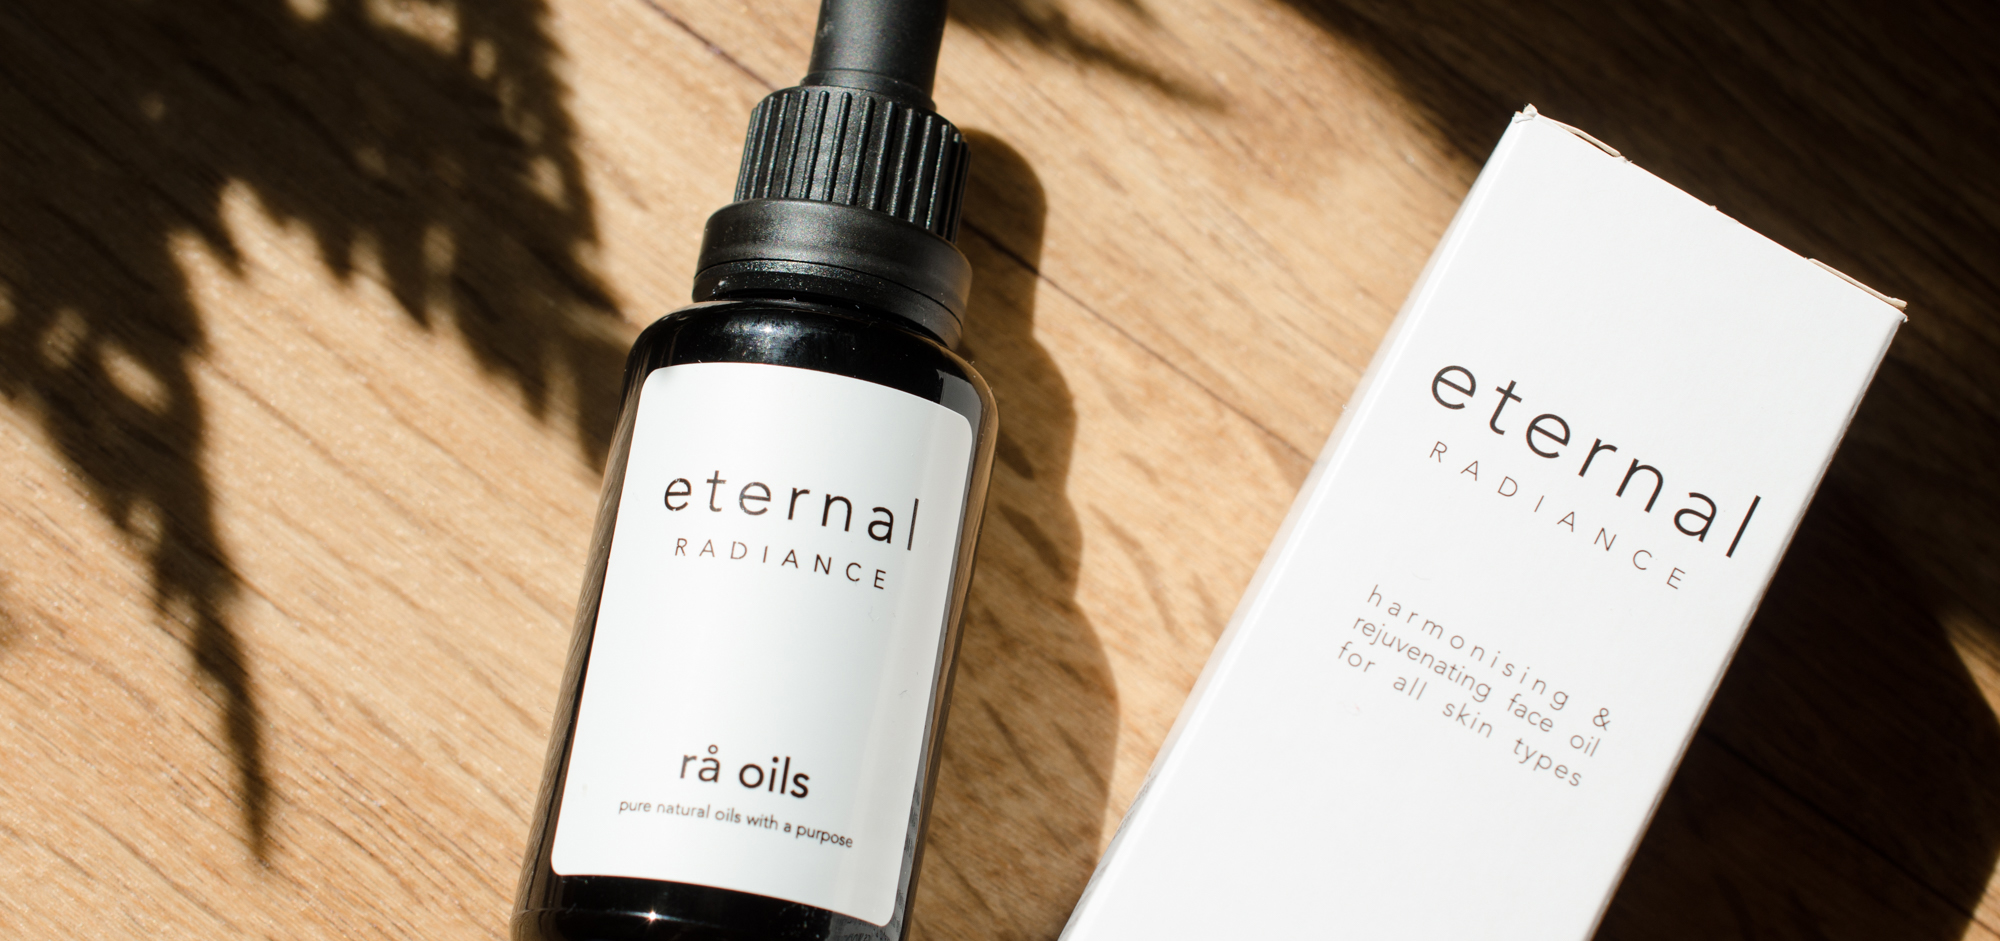 rå oils Eternal Radiance Face Oil review